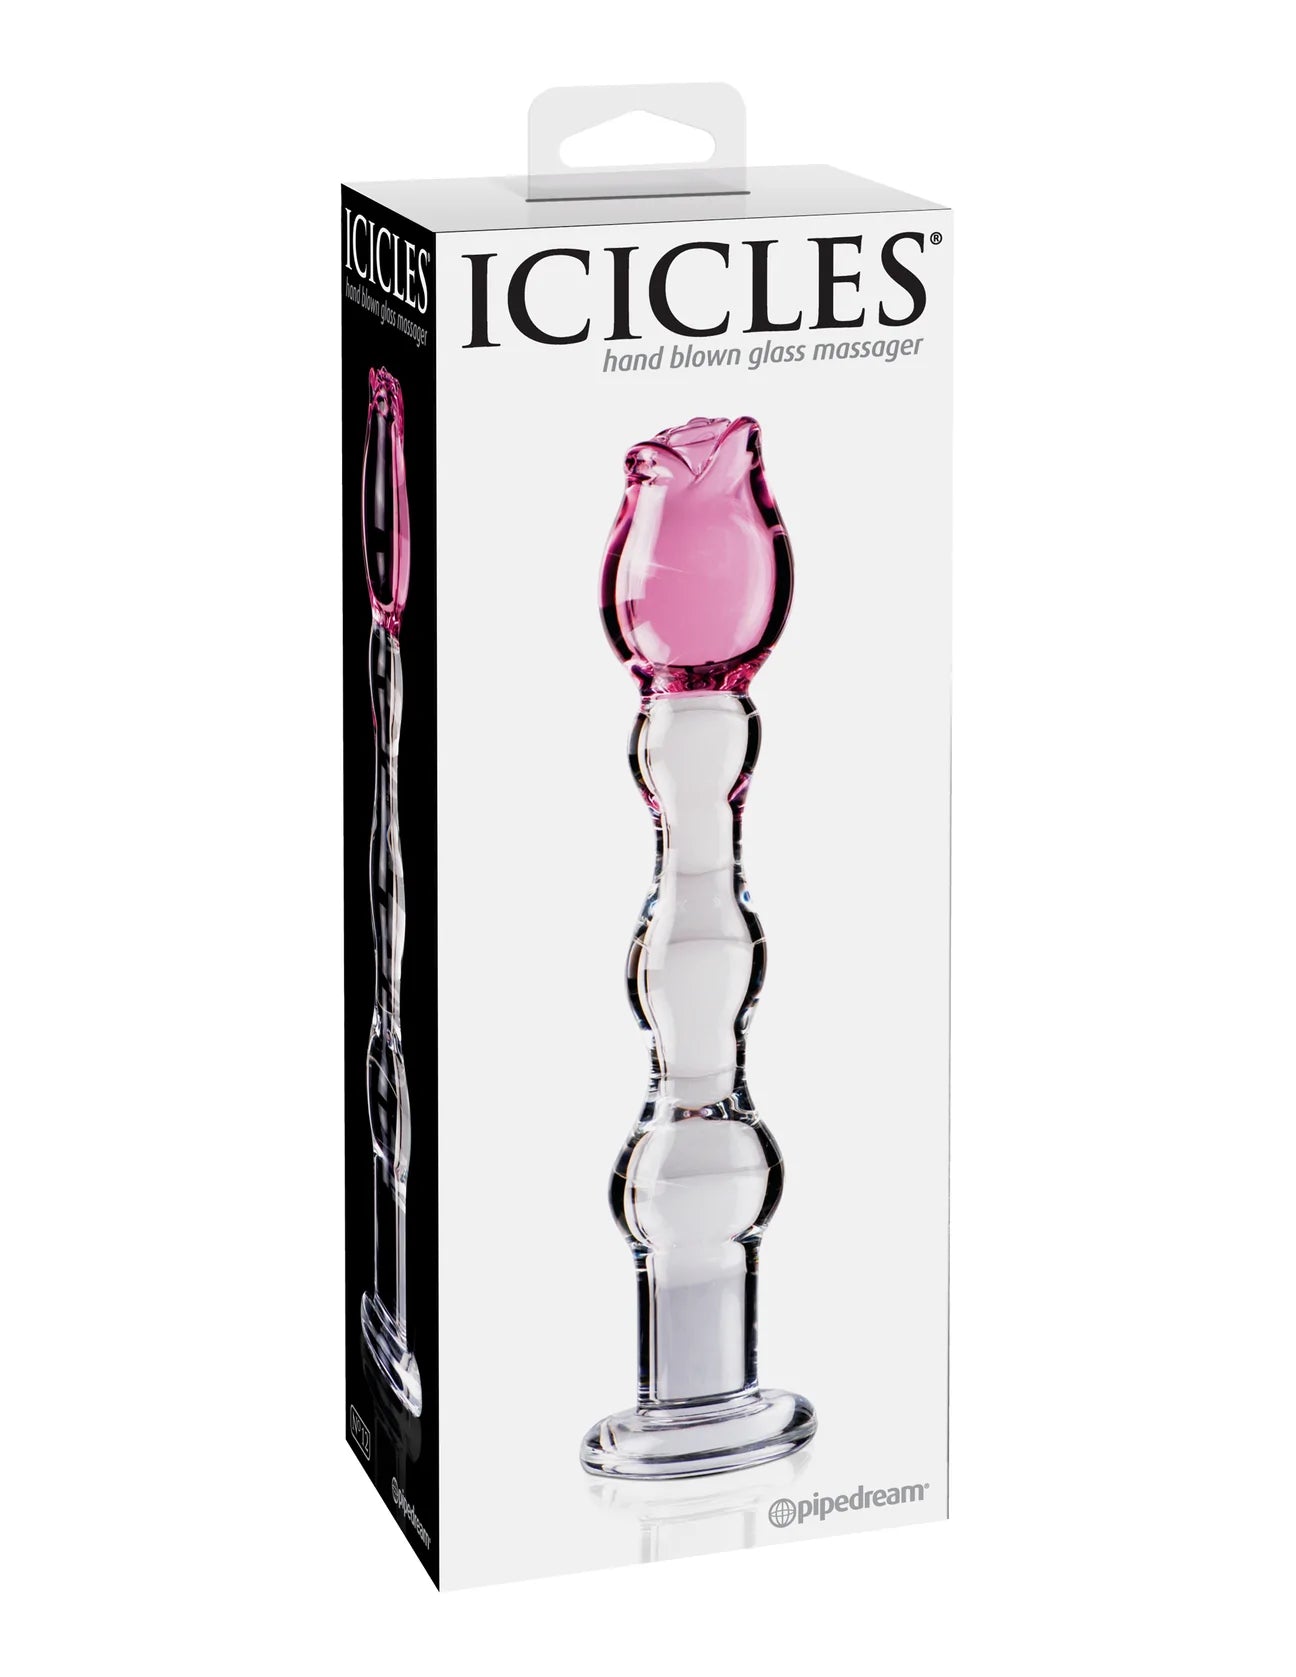 Icicles No. 12